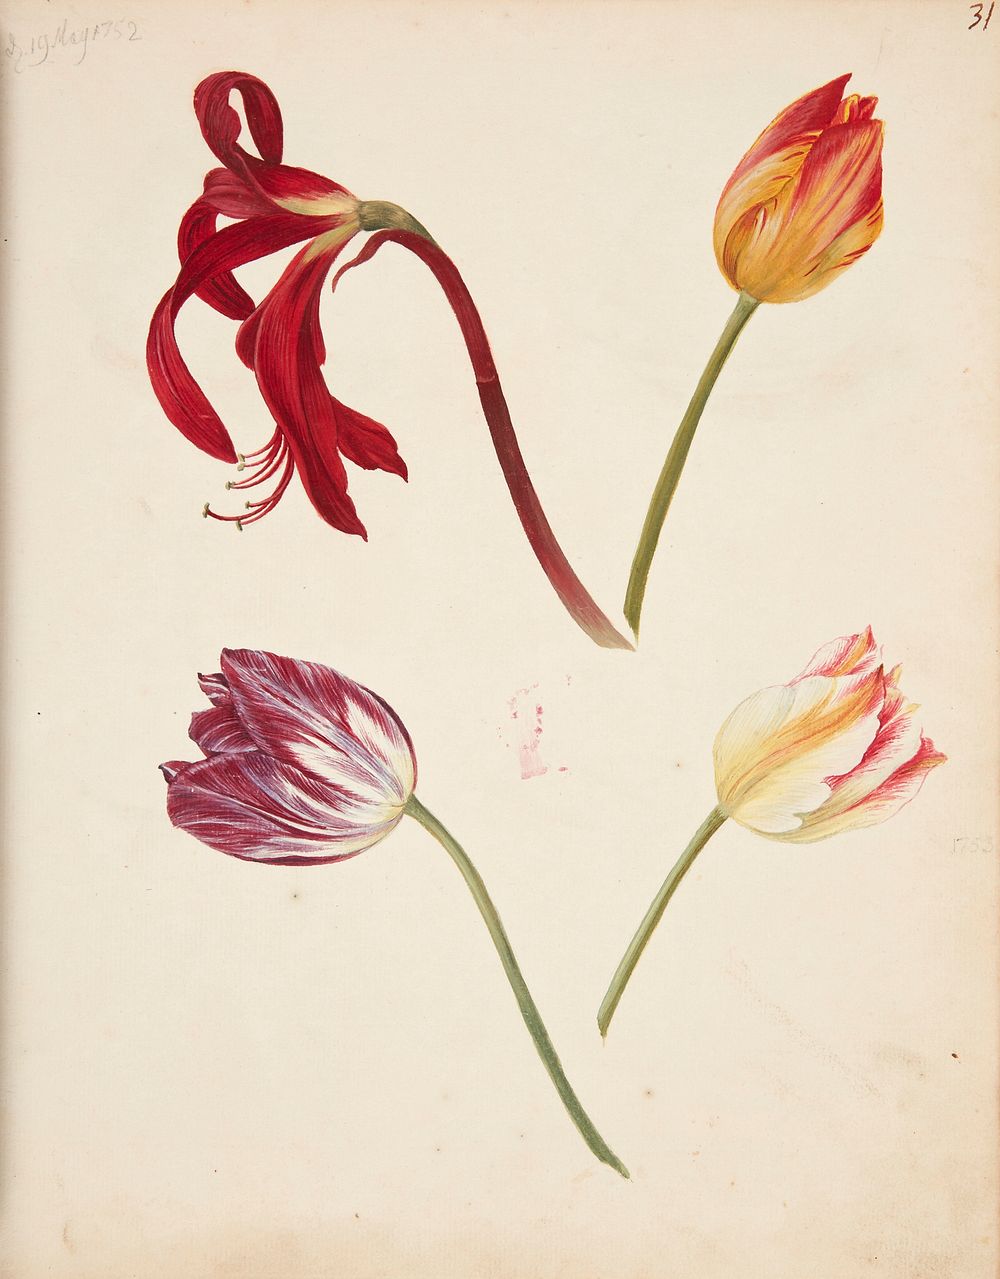 Study of tulips by Johanna Fosie